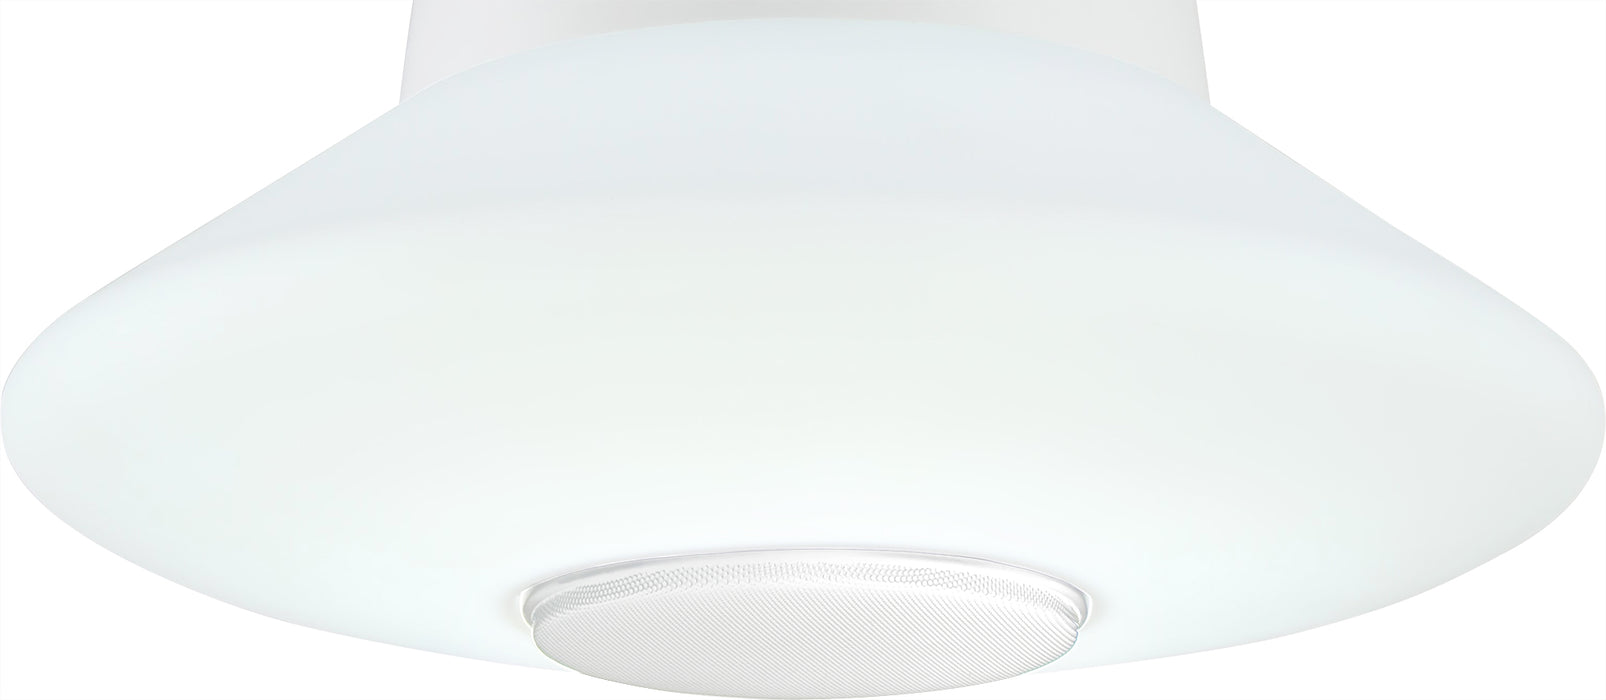 Regal lighting SL-1495 1 Light Pendant LED Ceiling Light White With Bluetooth Speaker IP44